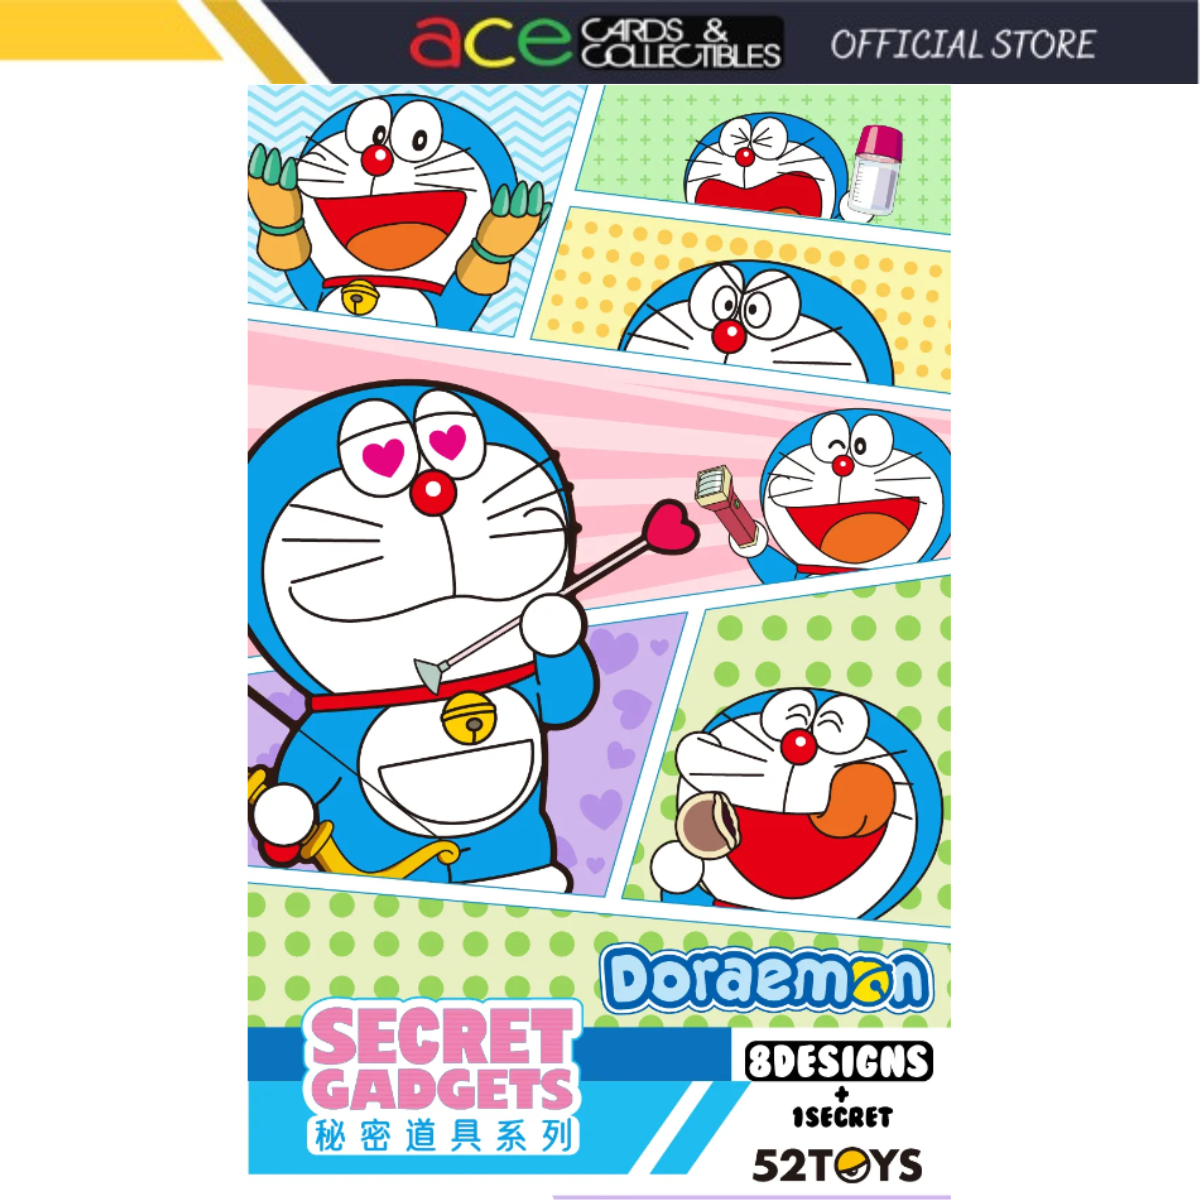 52Toys x Doraemon Secret Gadgets Series-Single Box (Random)-52Toys-Ace Cards & Collectibles